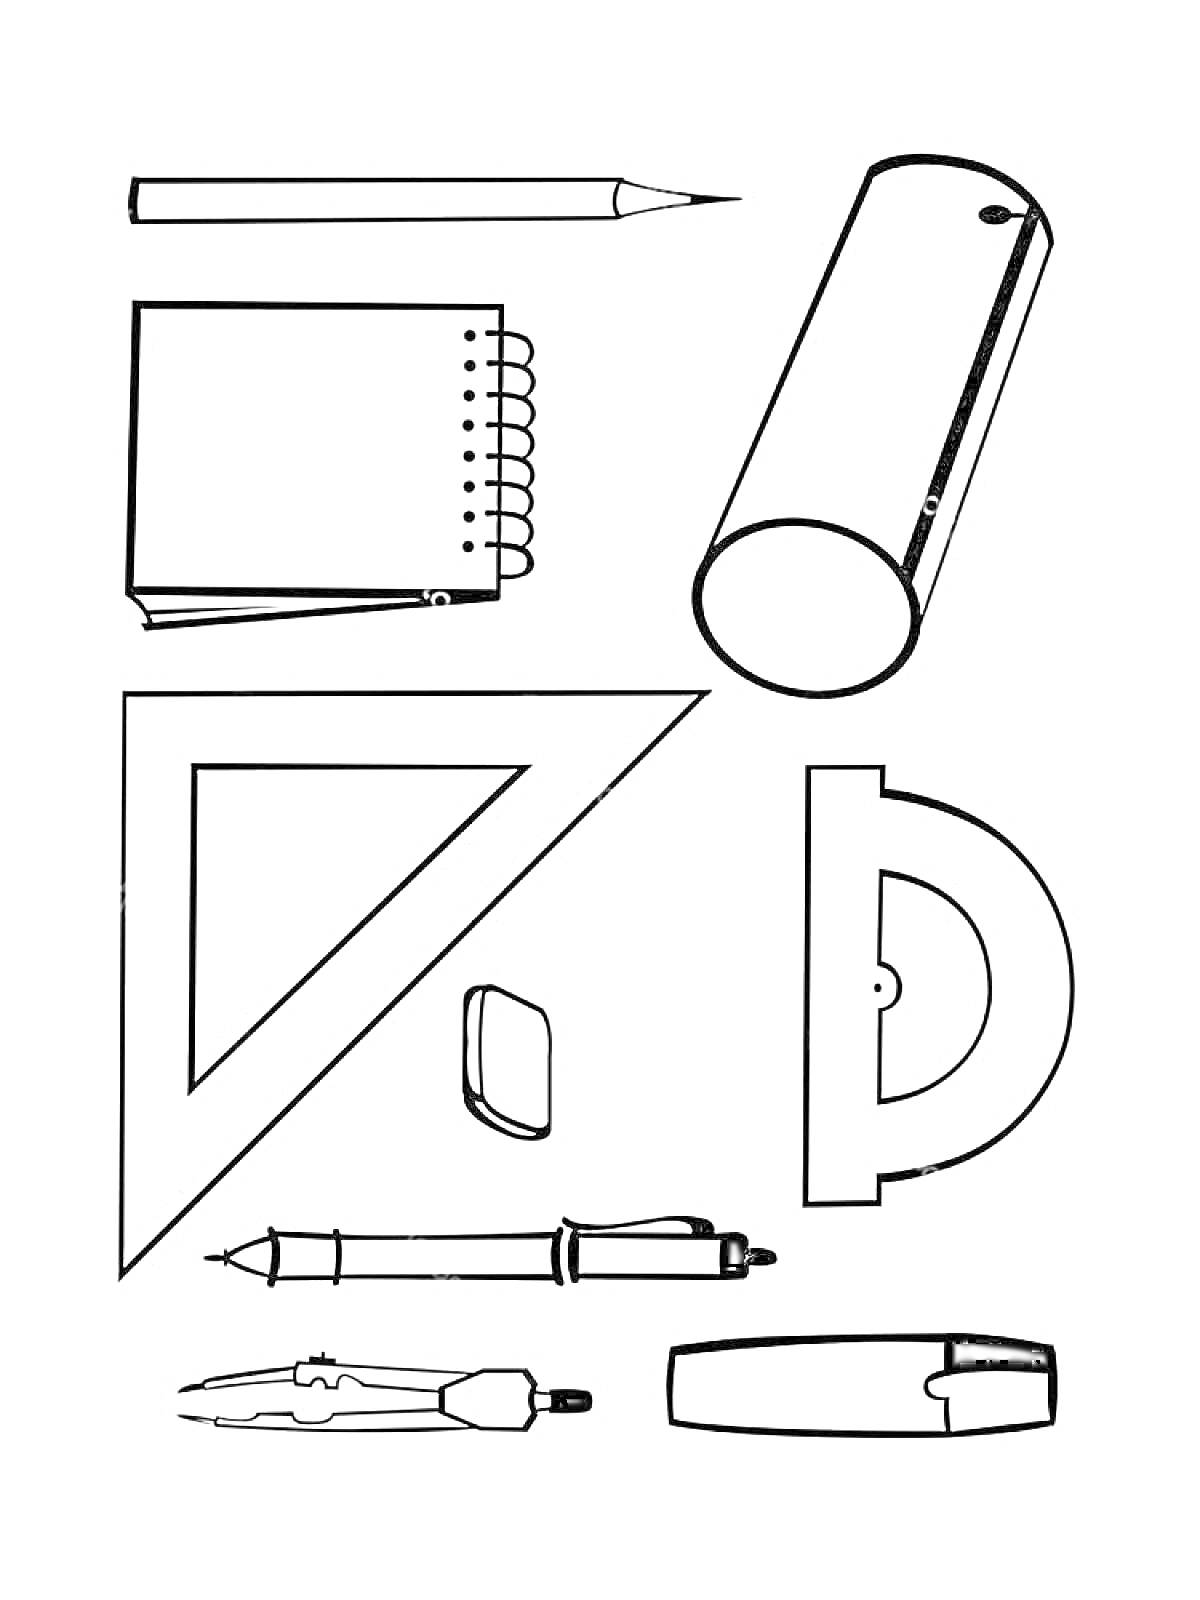 Школьные принадлежности: карандаш, точилка, блокнот, треугольник, стёрка, транспортир, циркуль, ручка, ножницы